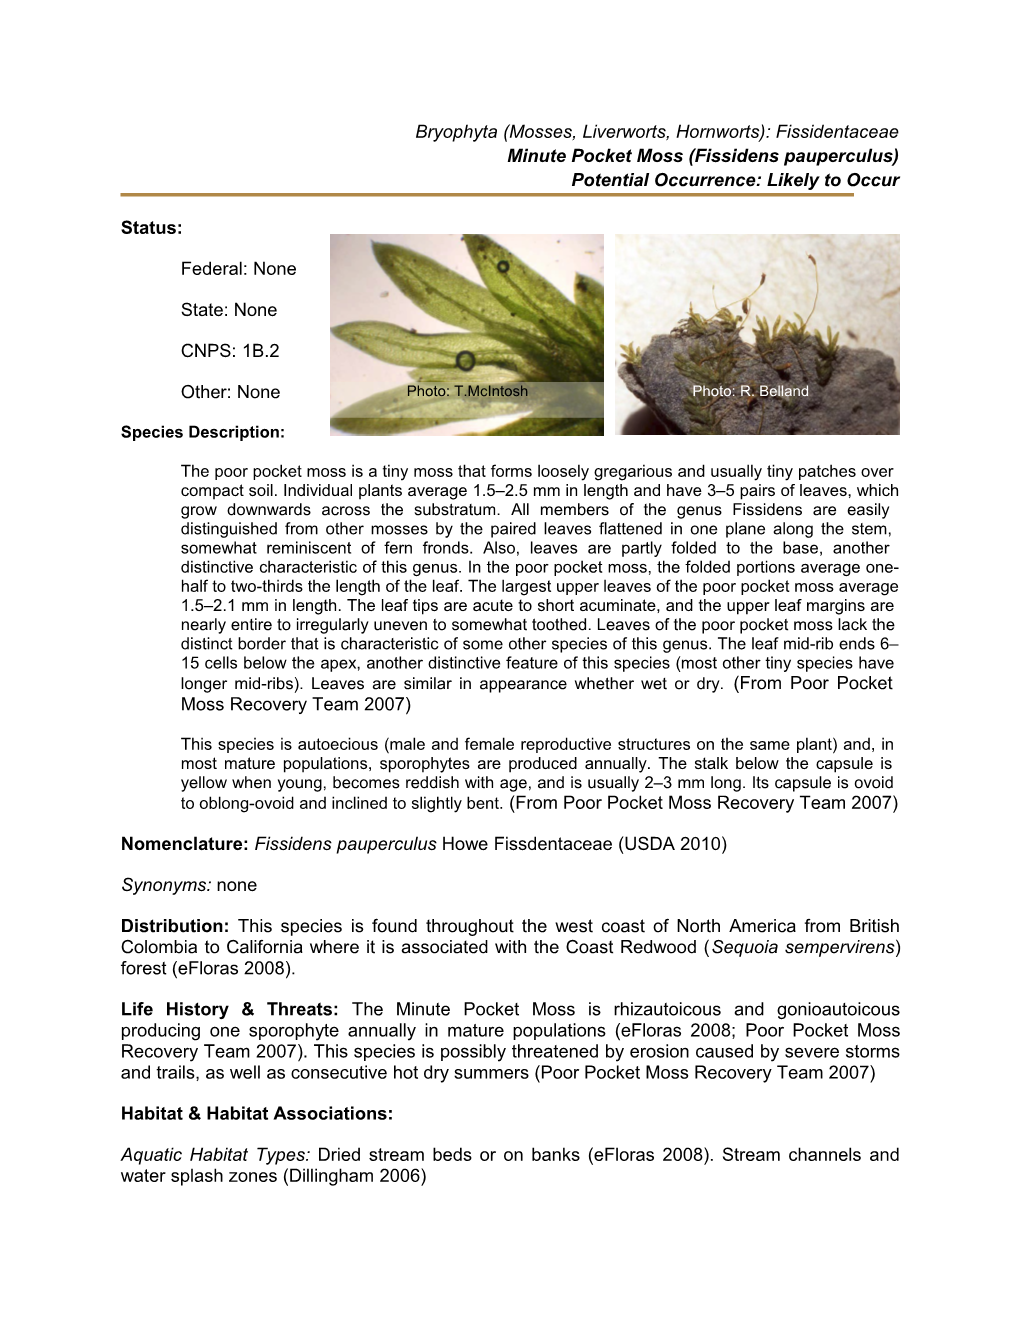 Minute Pocket Moss (Fissidens Pauperculus)